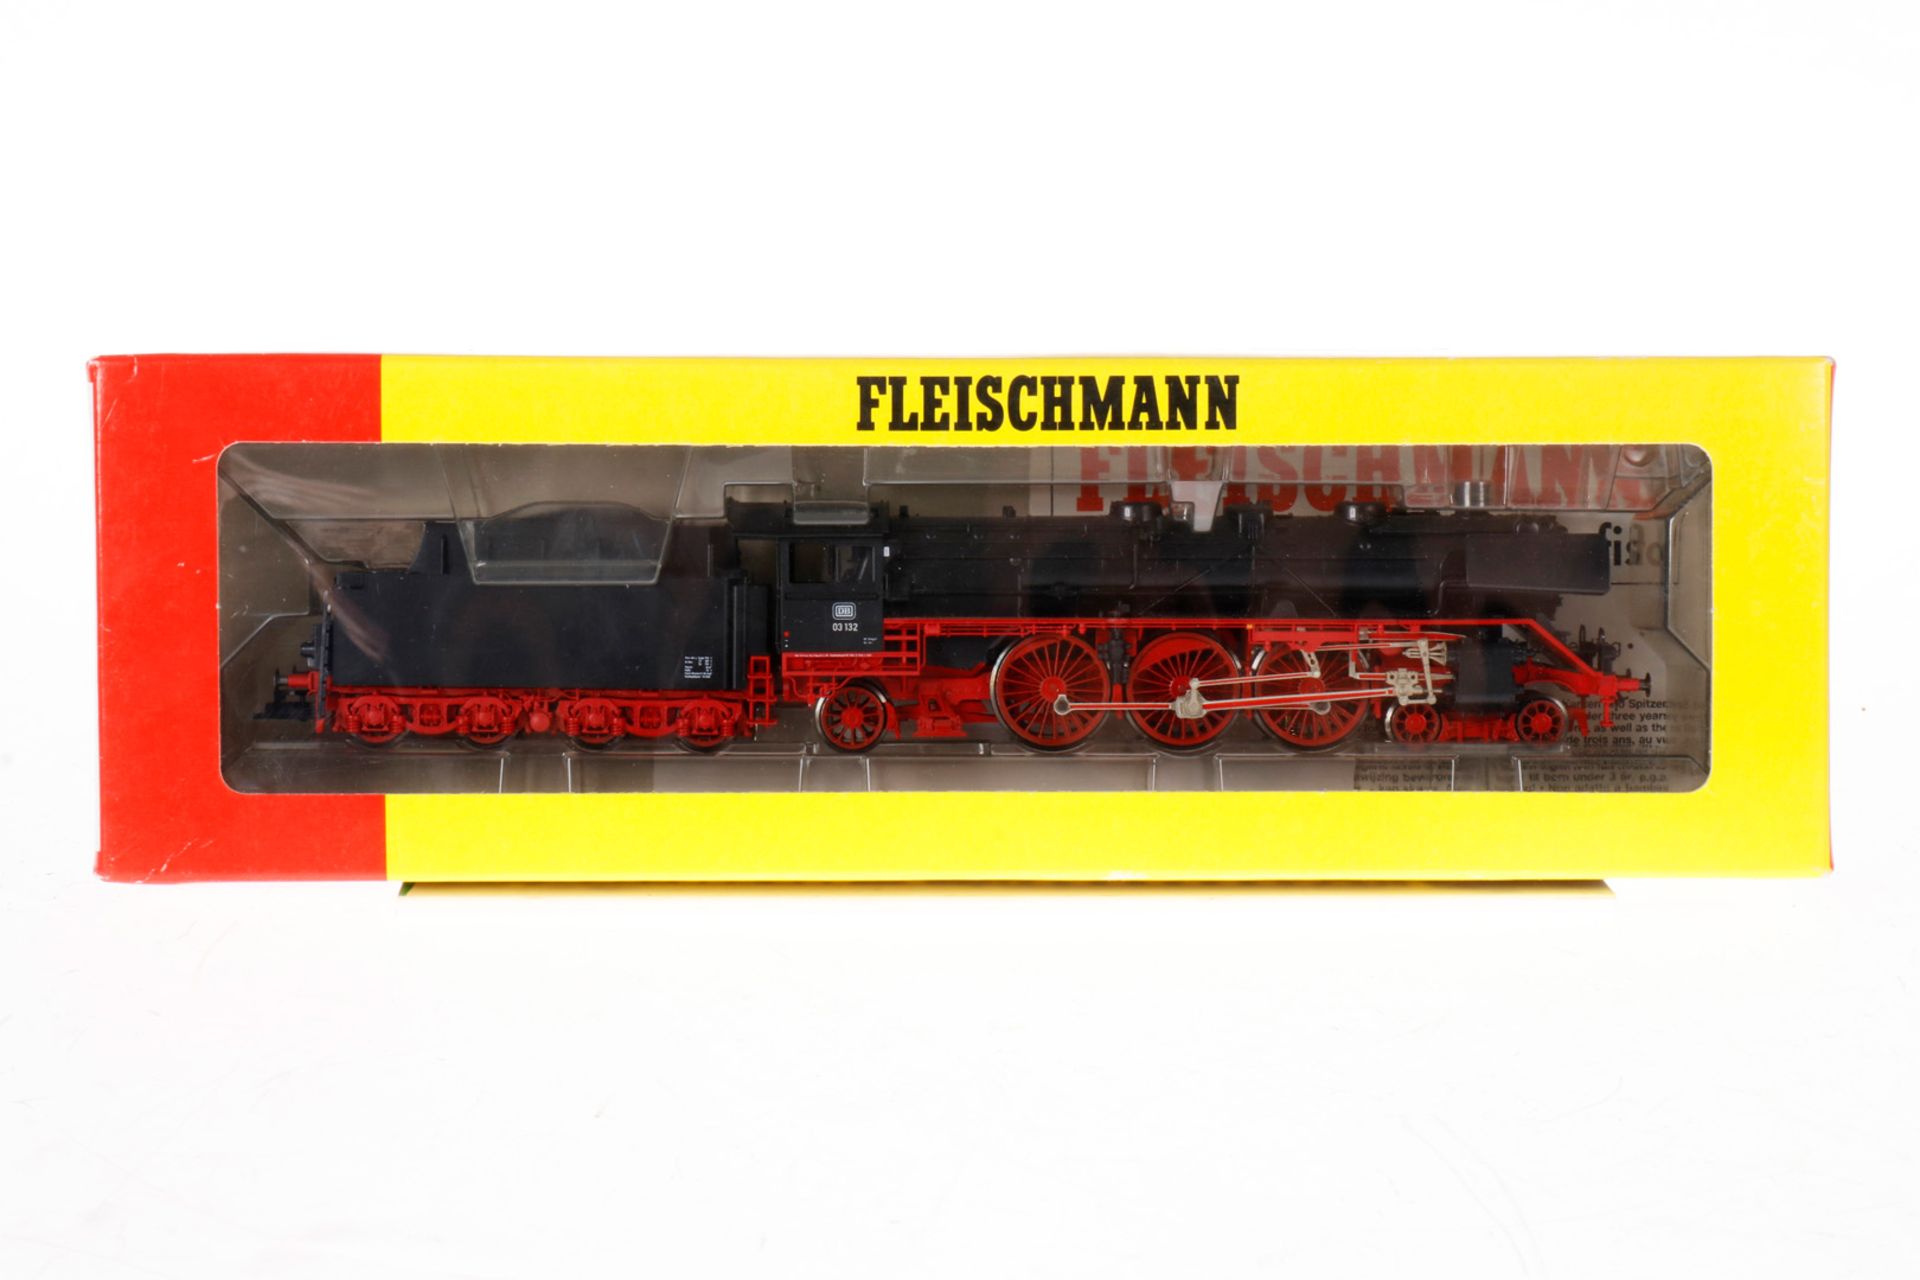 Fleischmann 2-C-1 Schlepptenderlok ”03 132” 4103, S H0, schwarz, Gebrauchsspuren, OK, Z 3